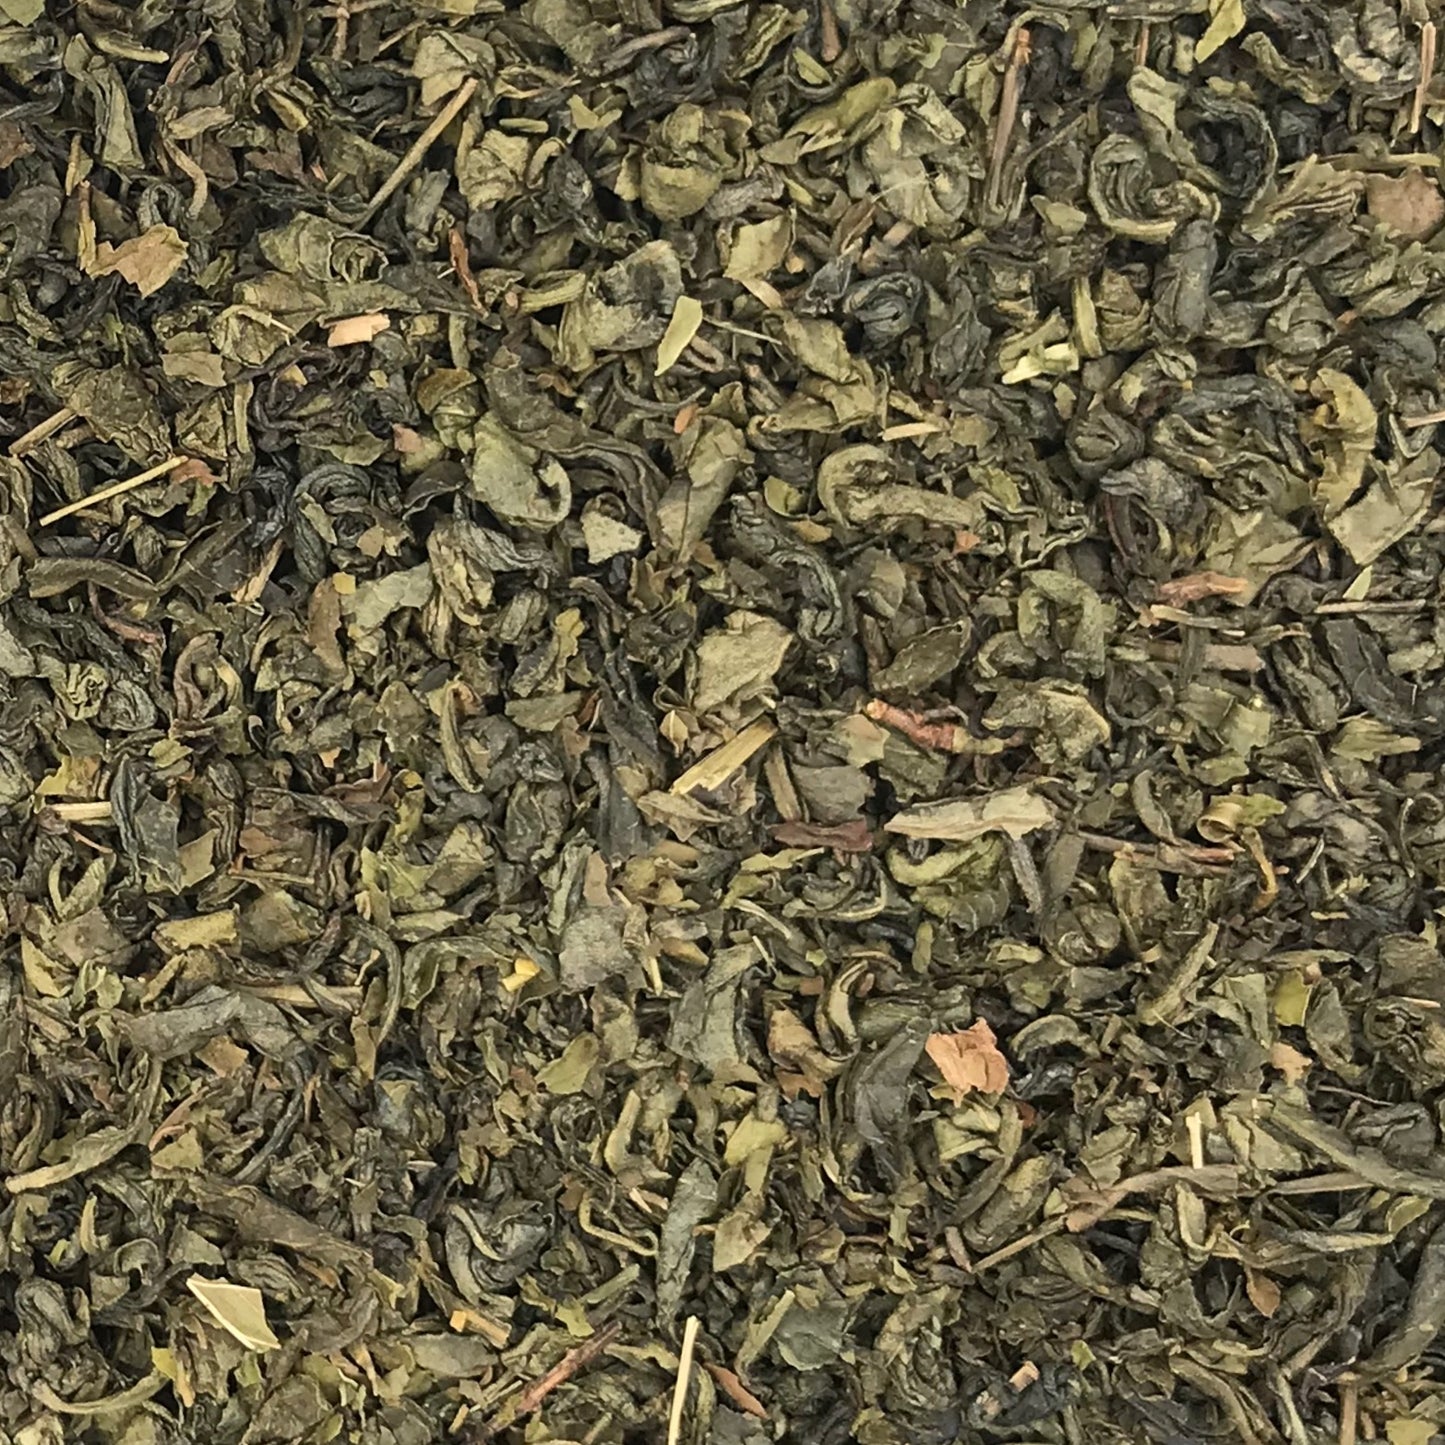 Organic Mint Green Tea